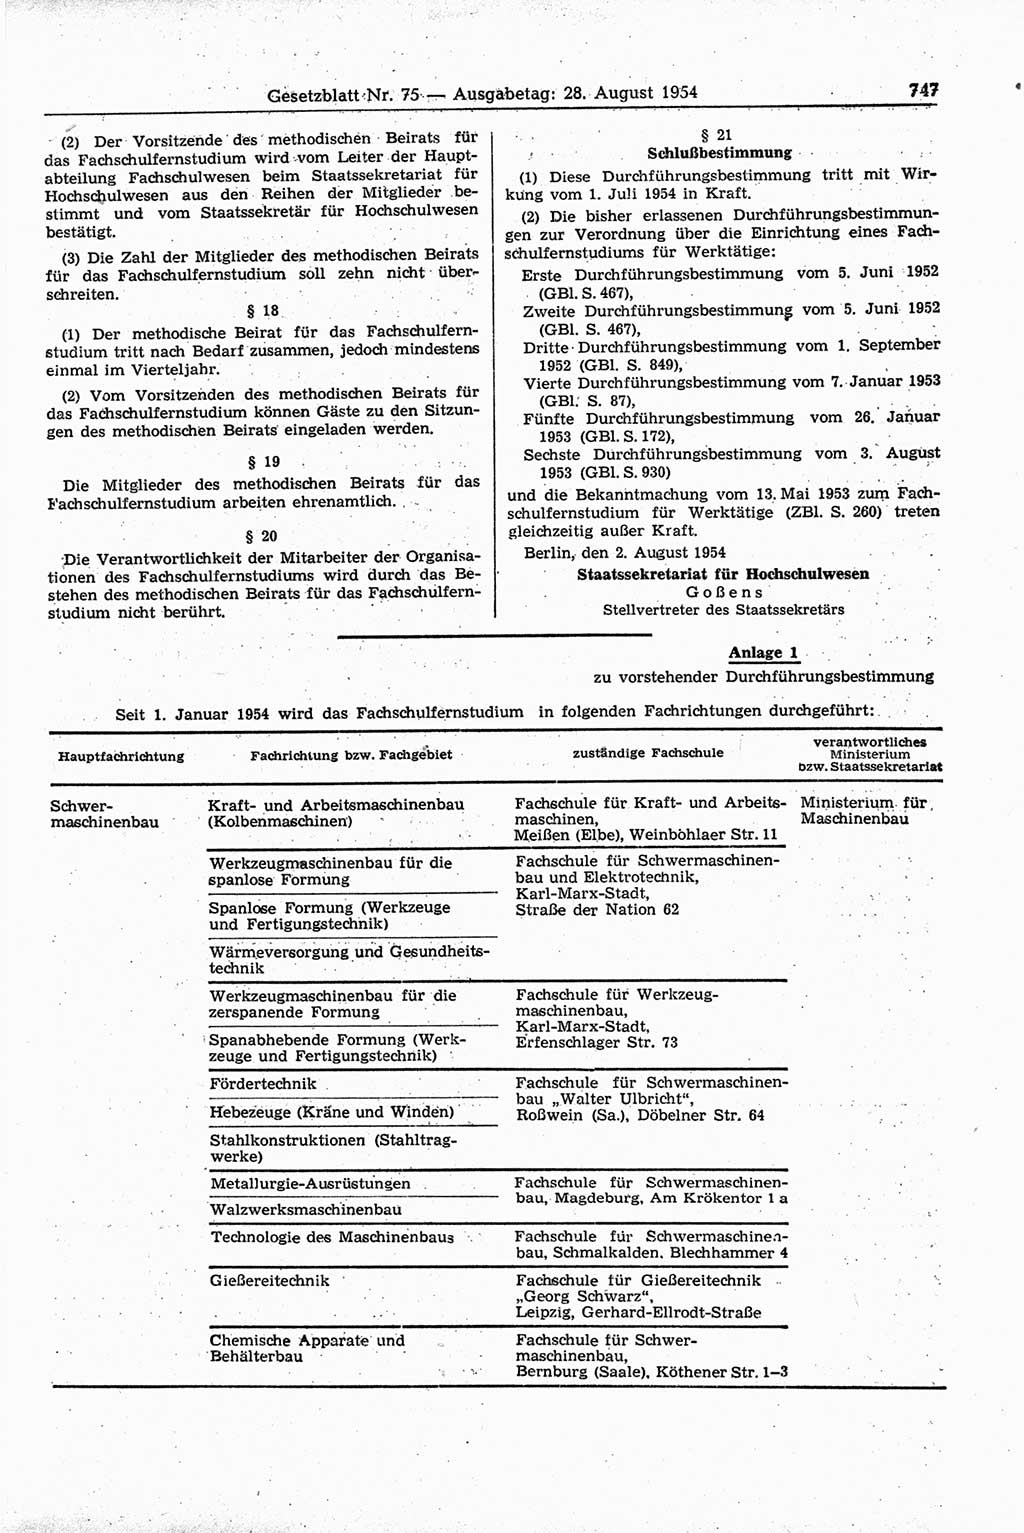 Gesetzblatt (GBl.) der Deutschen Demokratischen Republik (DDR) 1954, Seite 747 (GBl. DDR 1954, S. 747)